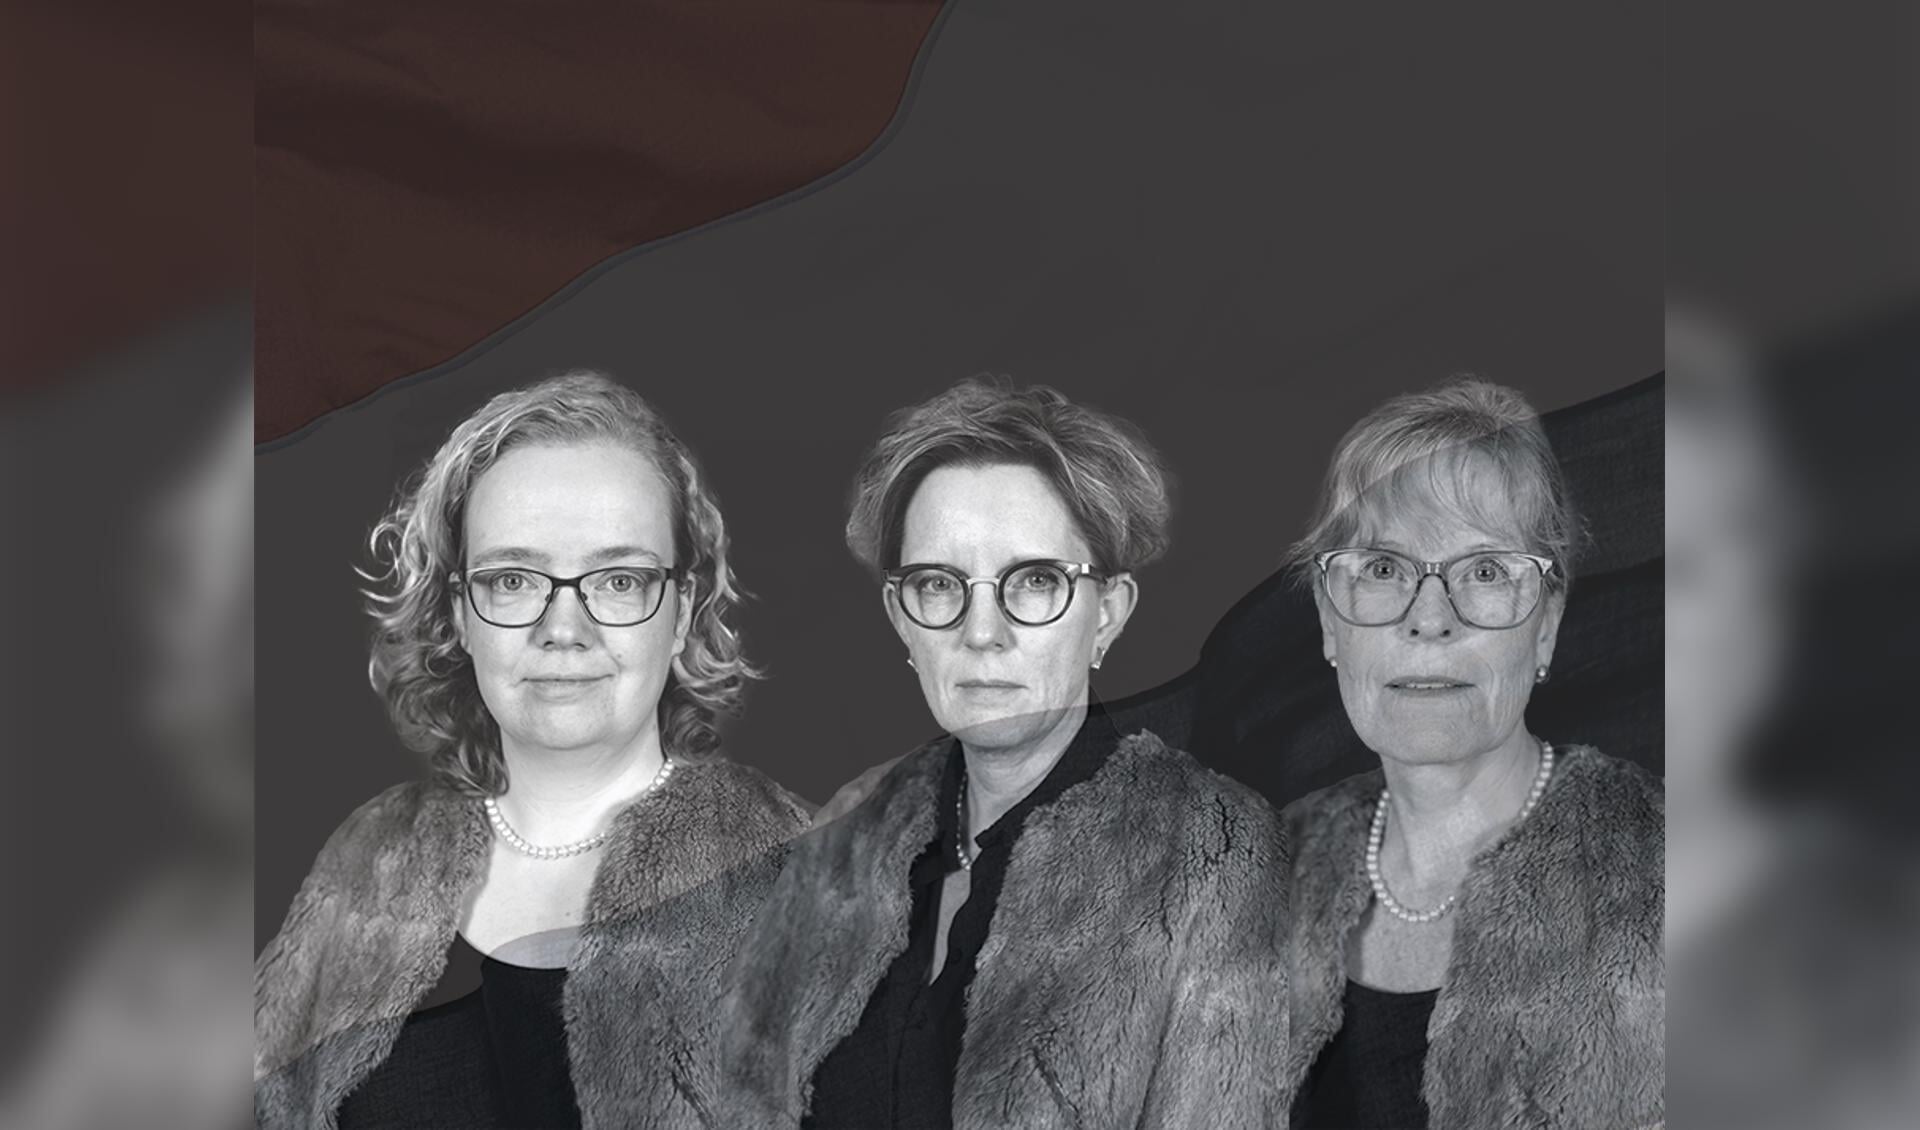 Kim Huis in 't Veld-van Elst, Esther Scholtens en Direlse Boon spelen alle drie koningin Wilhelmina in verschillende fases van haar leven.